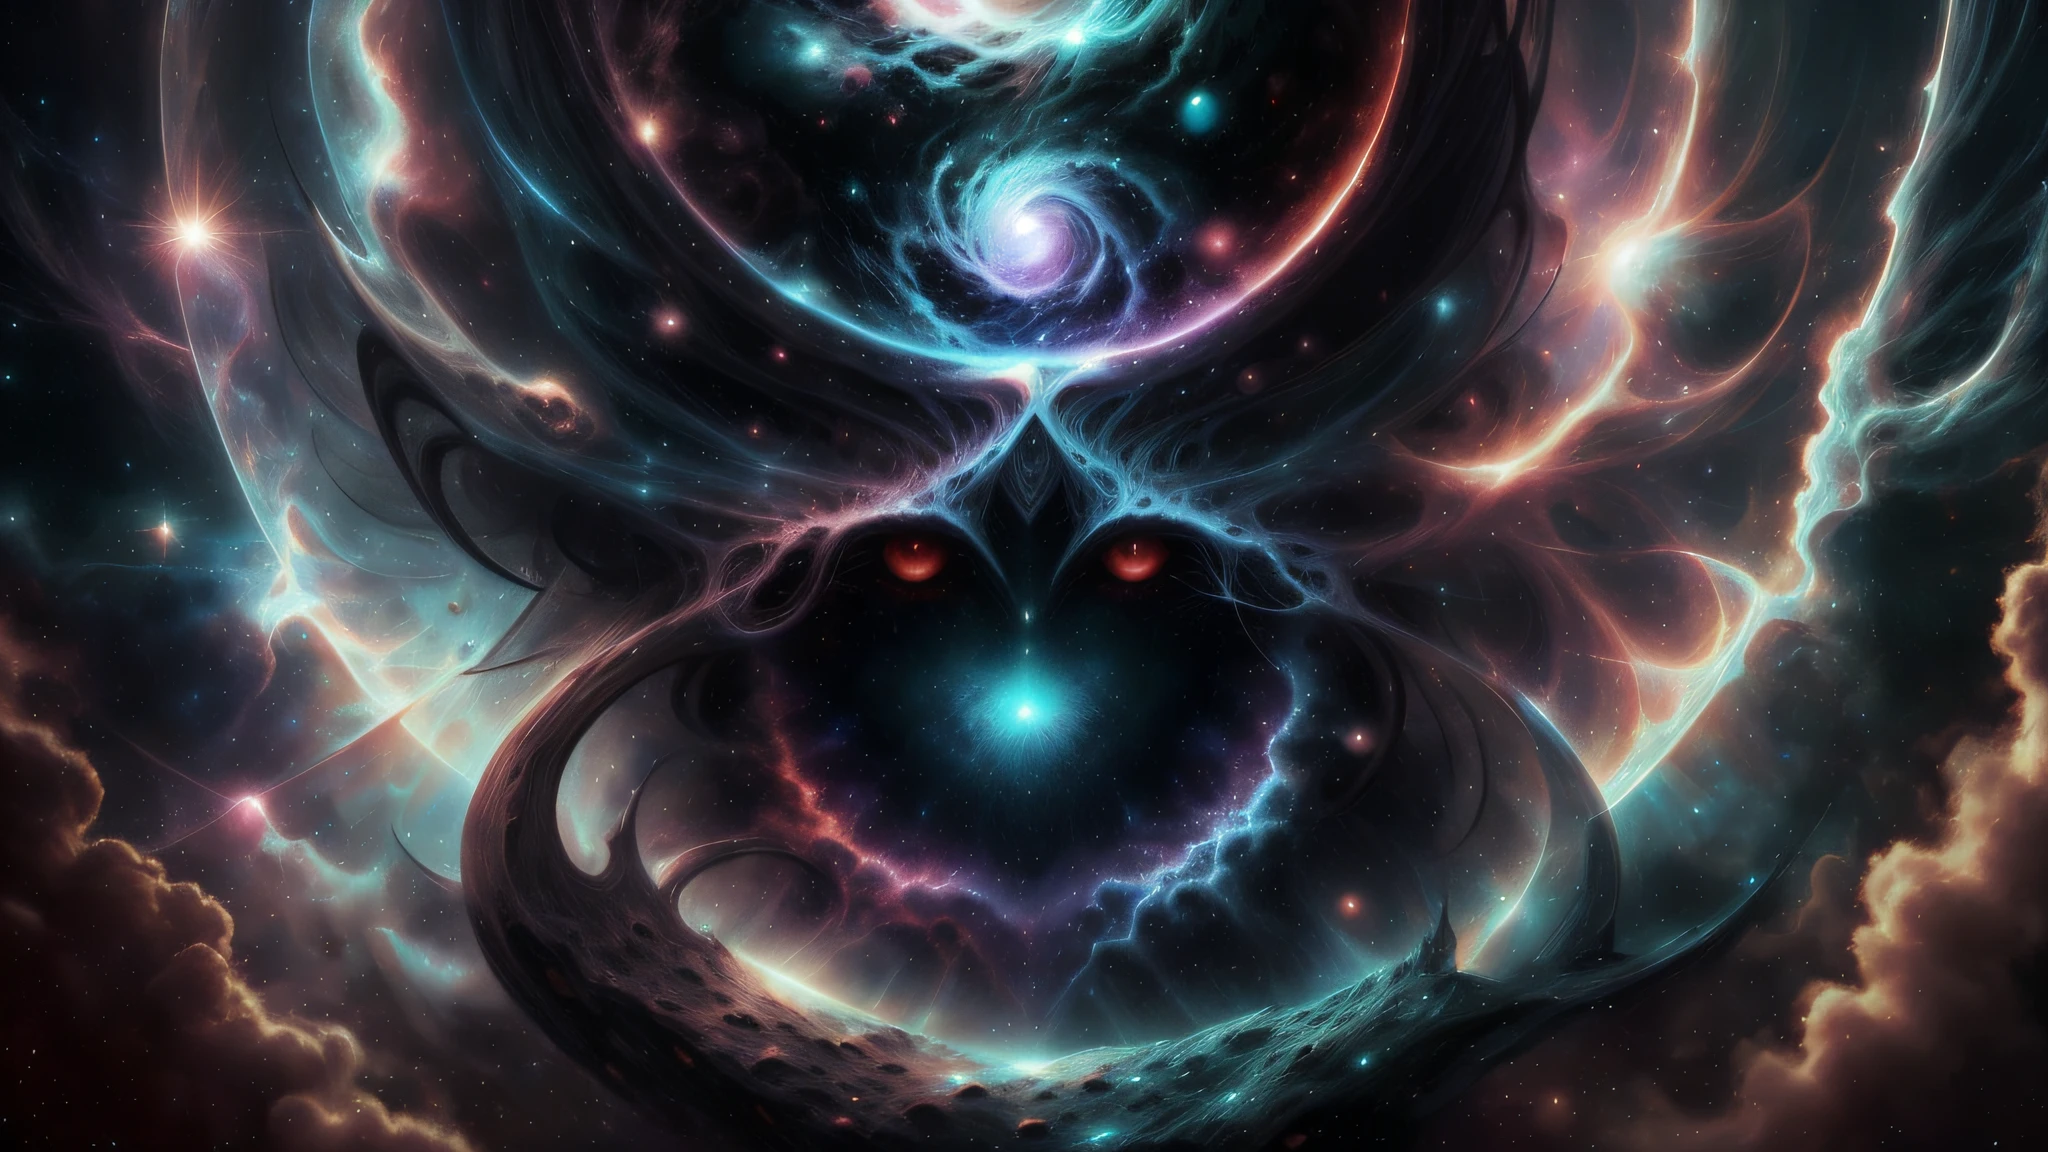 El Dios creador cósmico forma el oscuro mundo de fantasía a partir del caos del universo primitivo., con un ojo en el centro